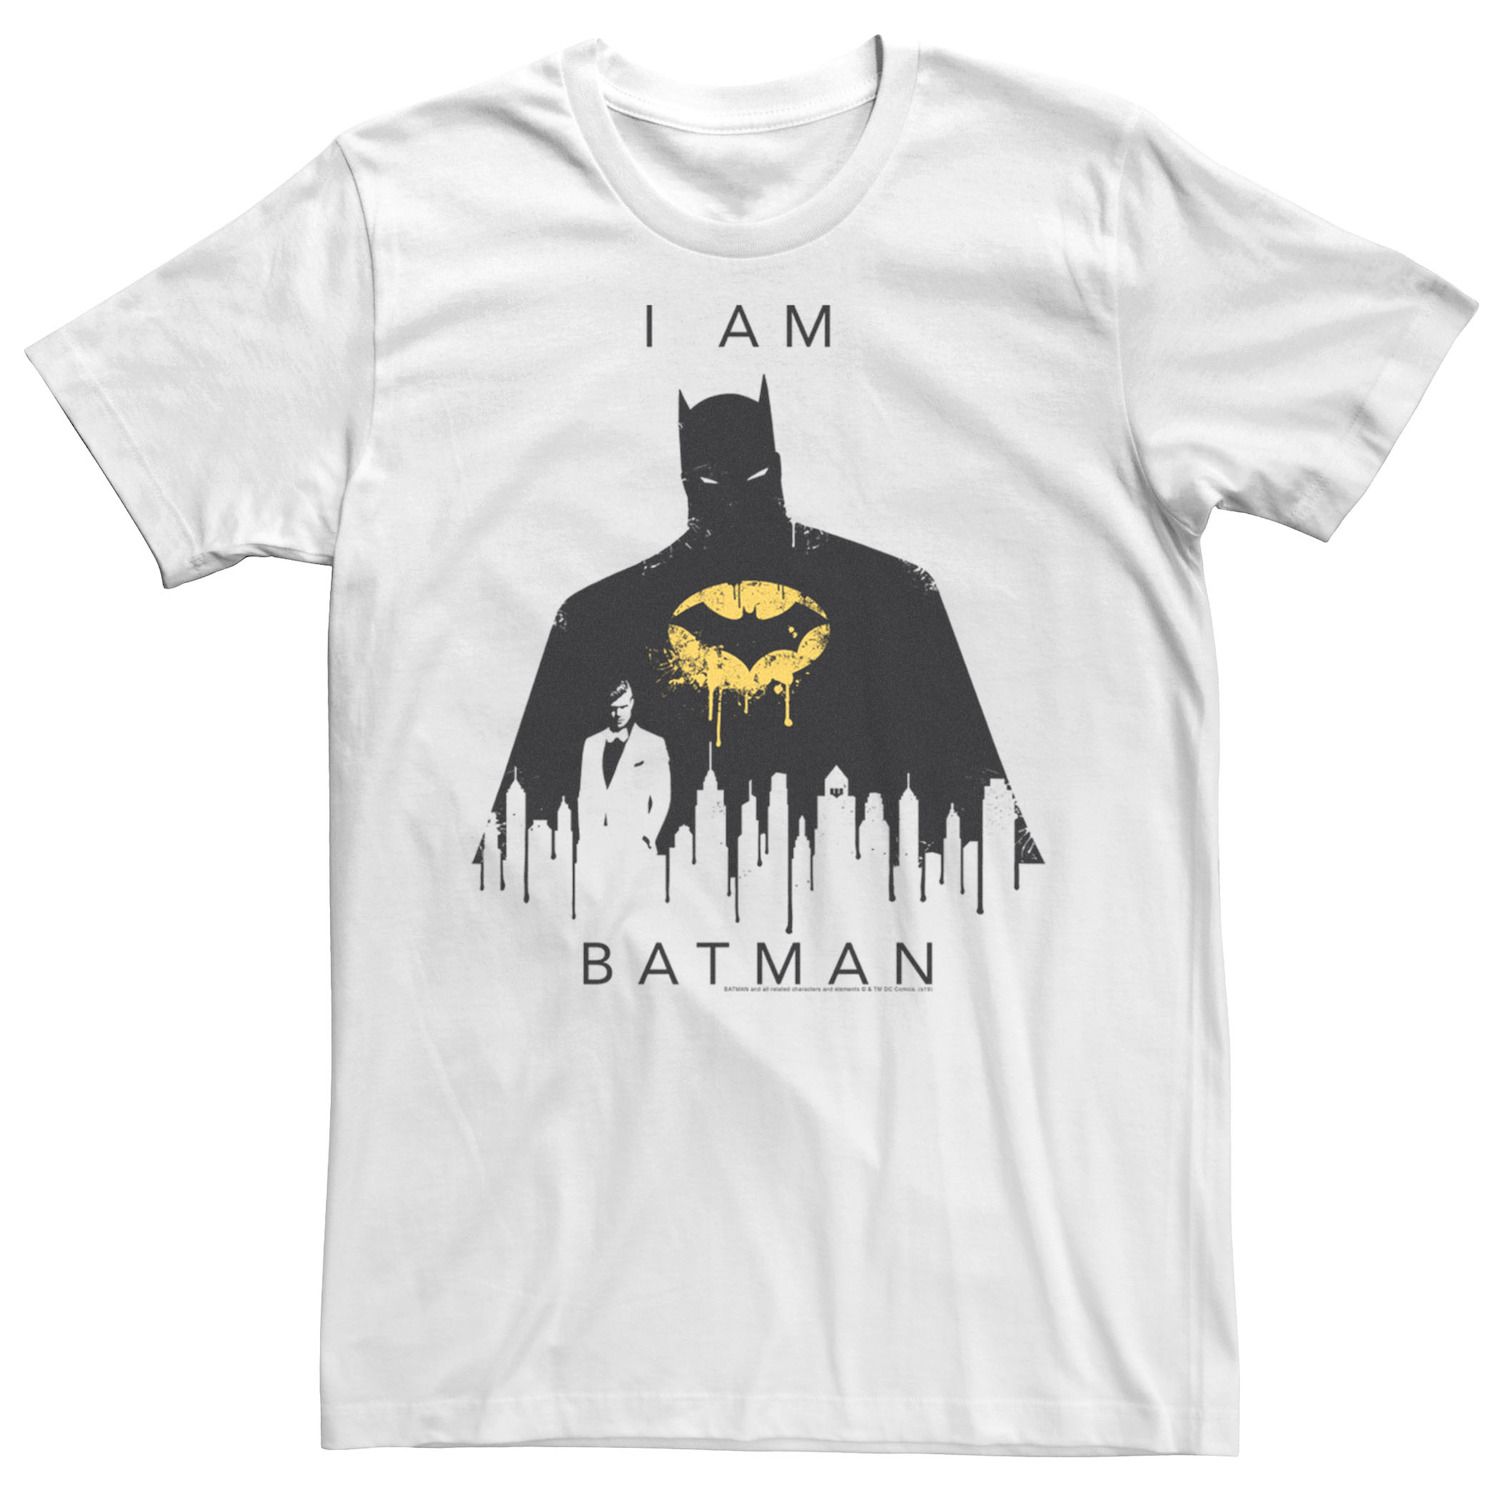 Мужская футболка Batman I Am Batman Licensed Character batman character encyclopedia